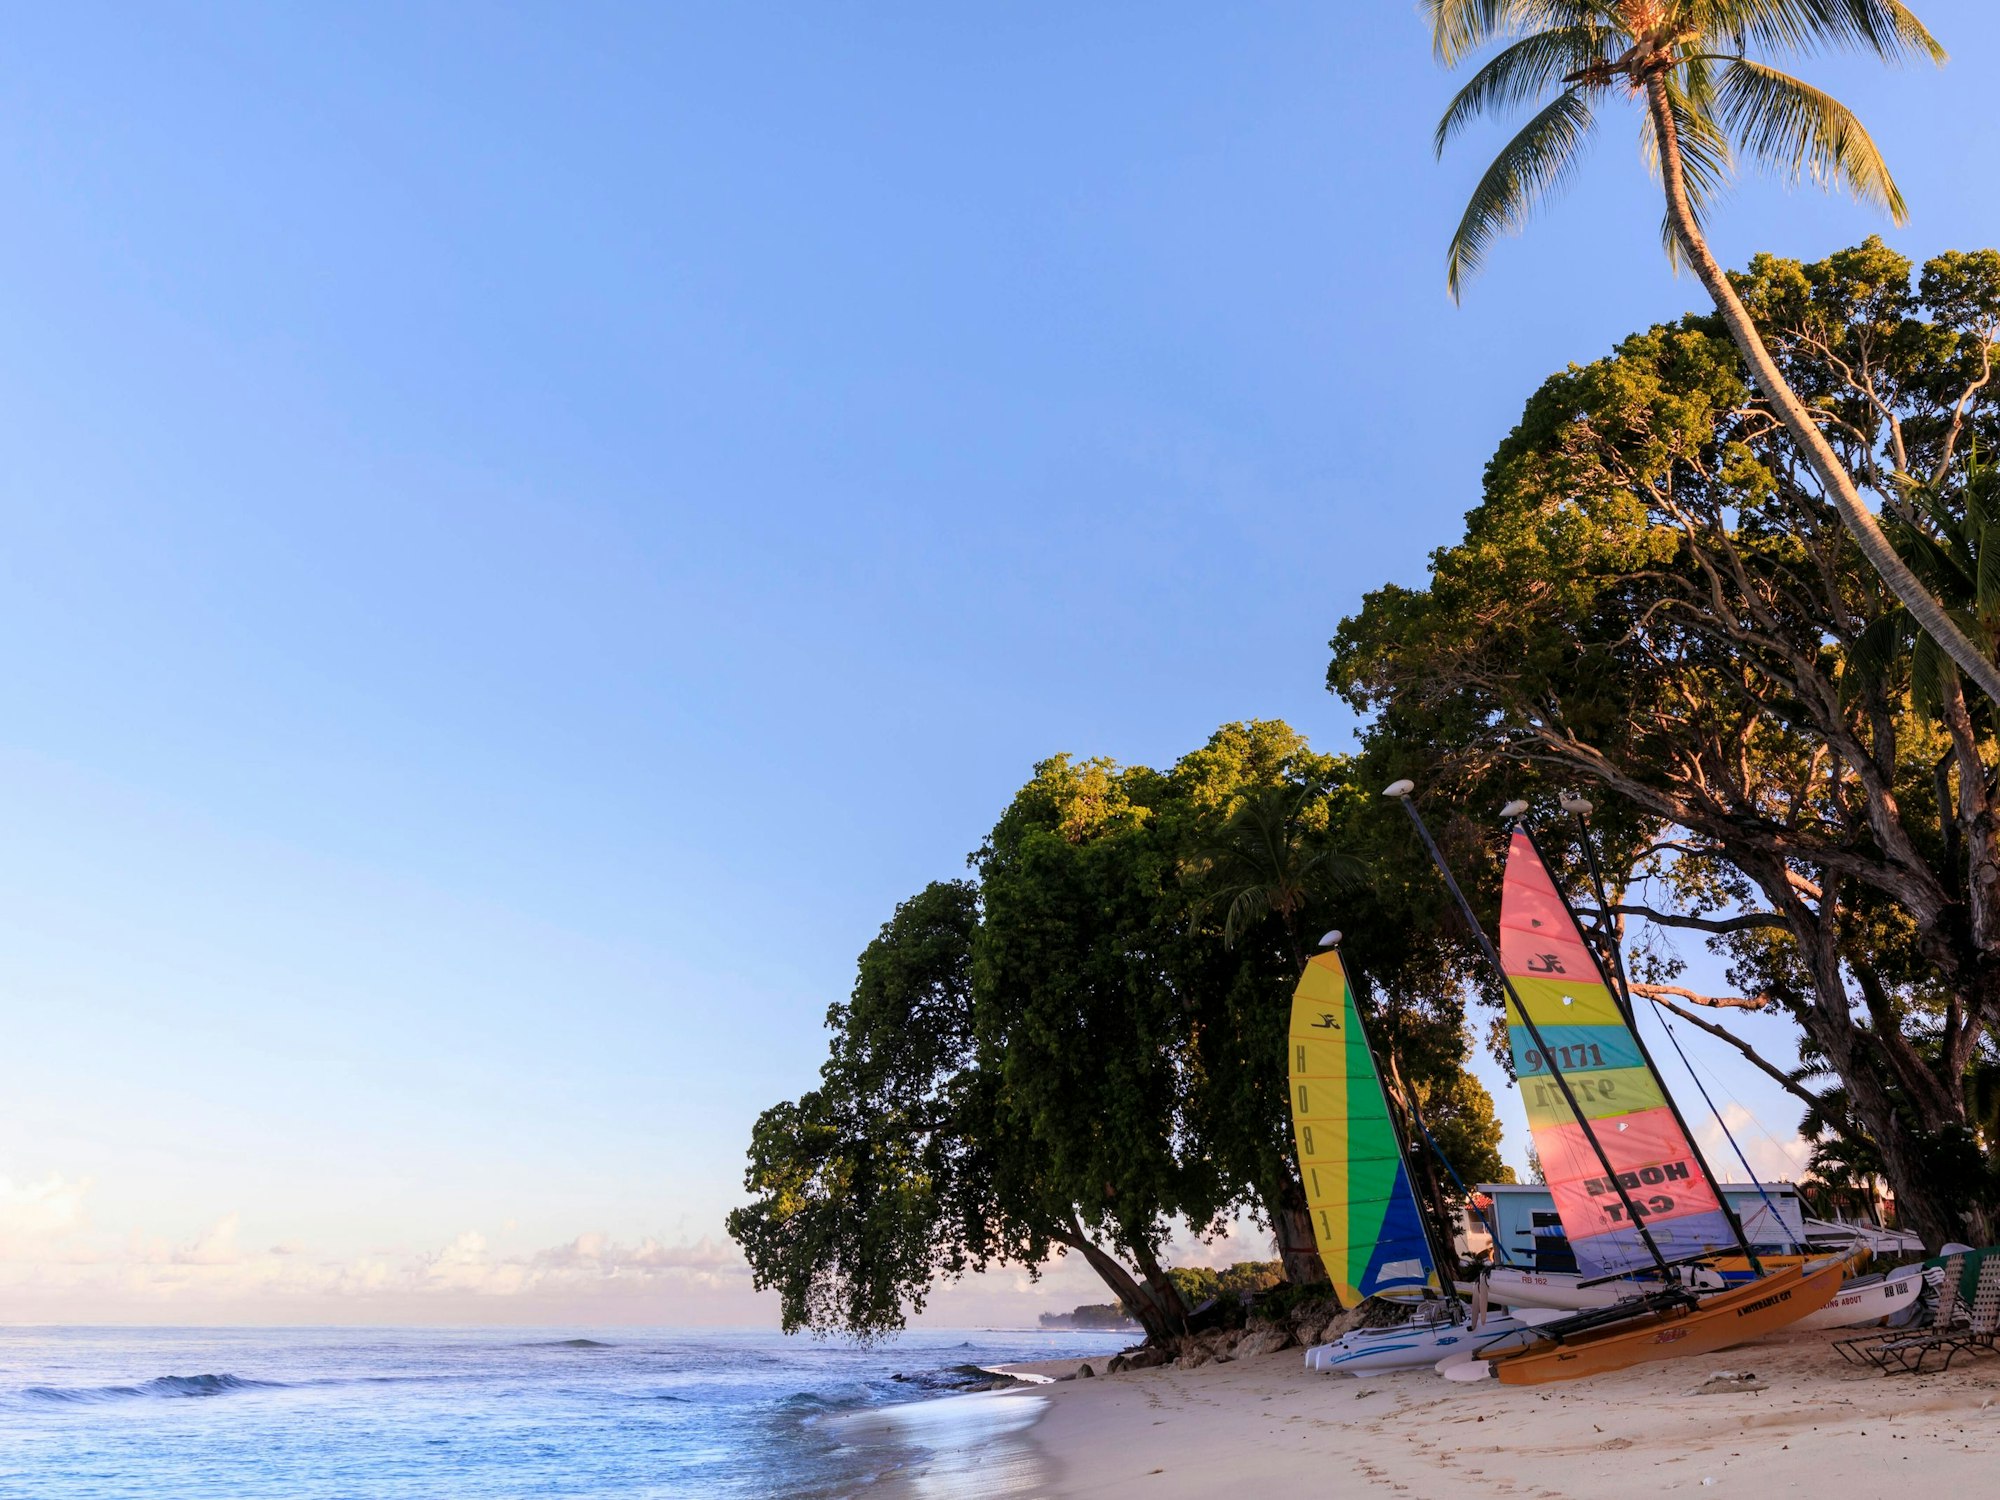 Bunte Segelboote werden an einem Strand von Barbados gelagert. Hinter ihnen sind Bäume und Palmen zu sehen, daneben das türkise Meer.